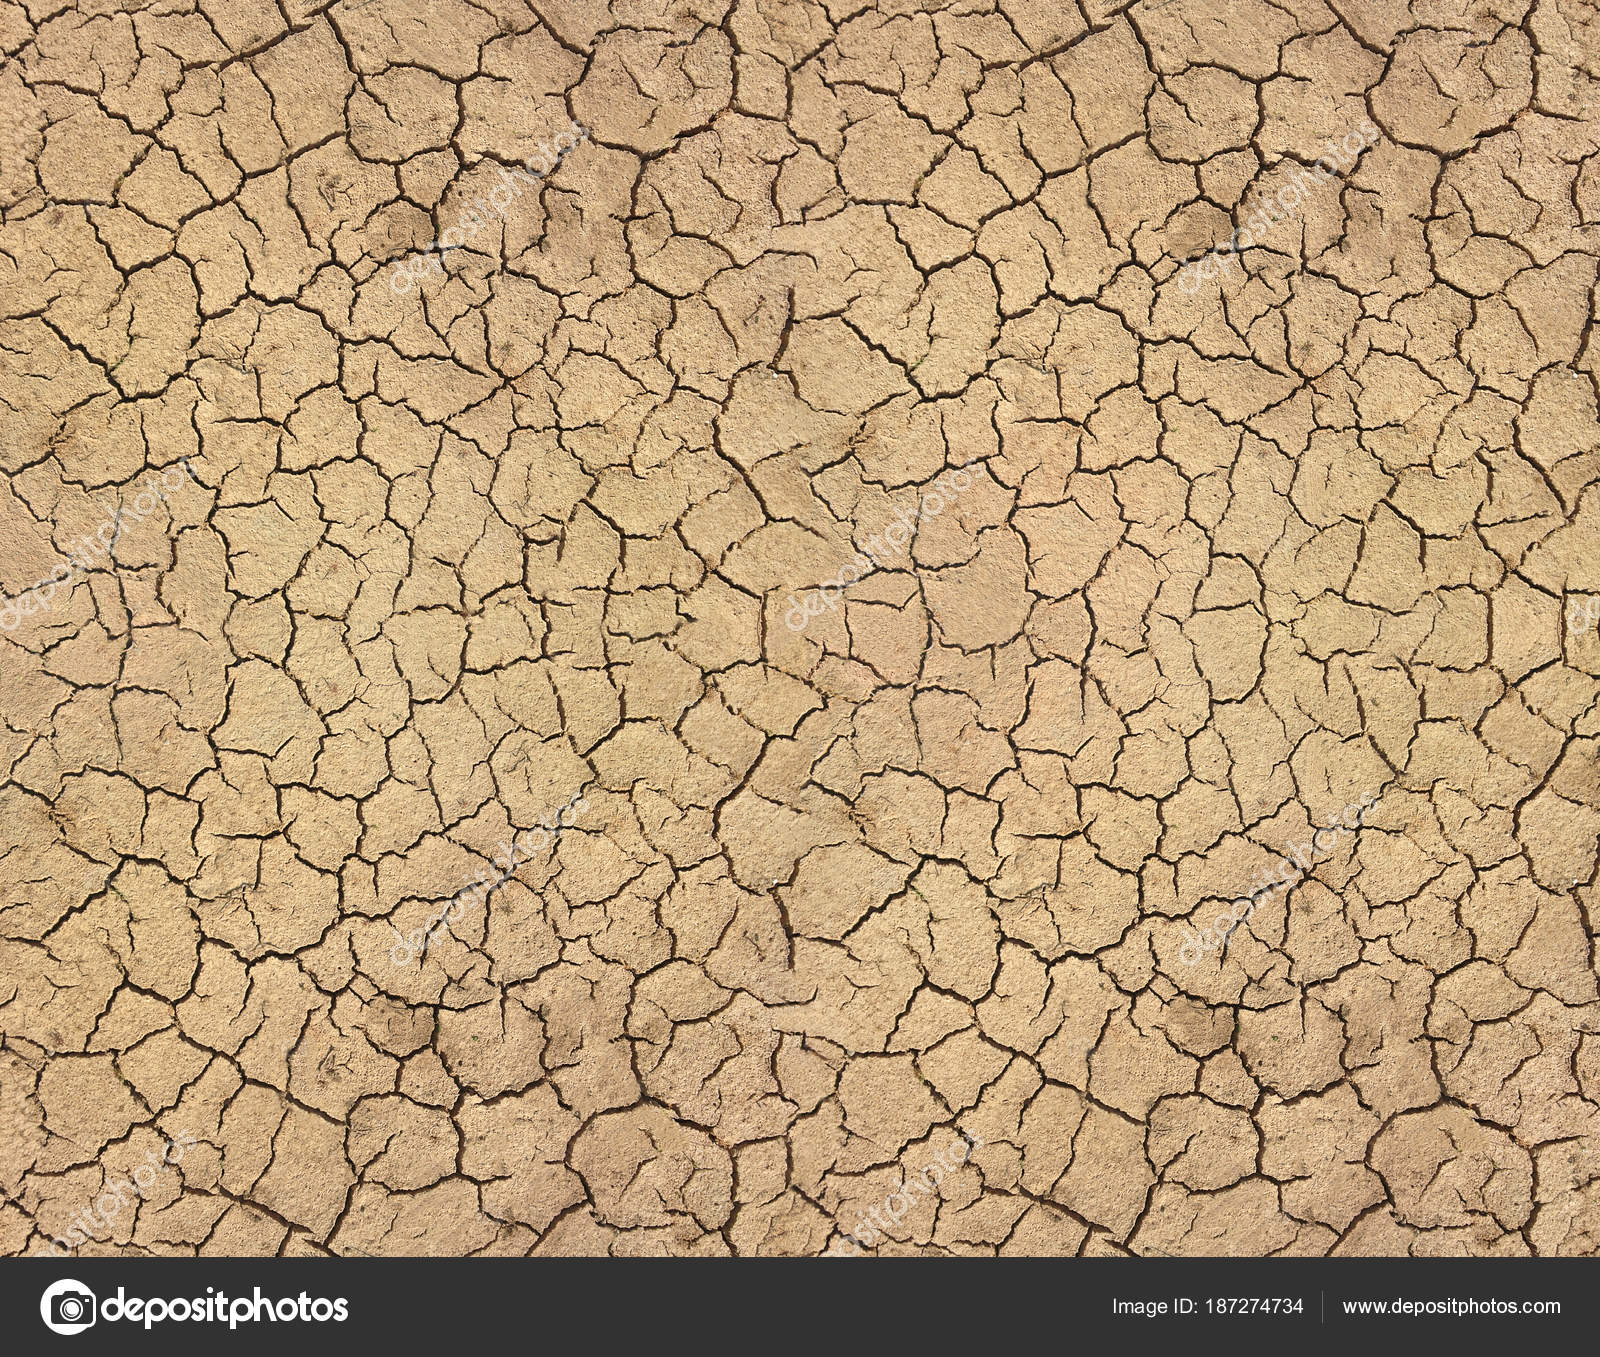 Dry soil cracked texture — Stock Photo © ksimonova.gmail.com #187274734